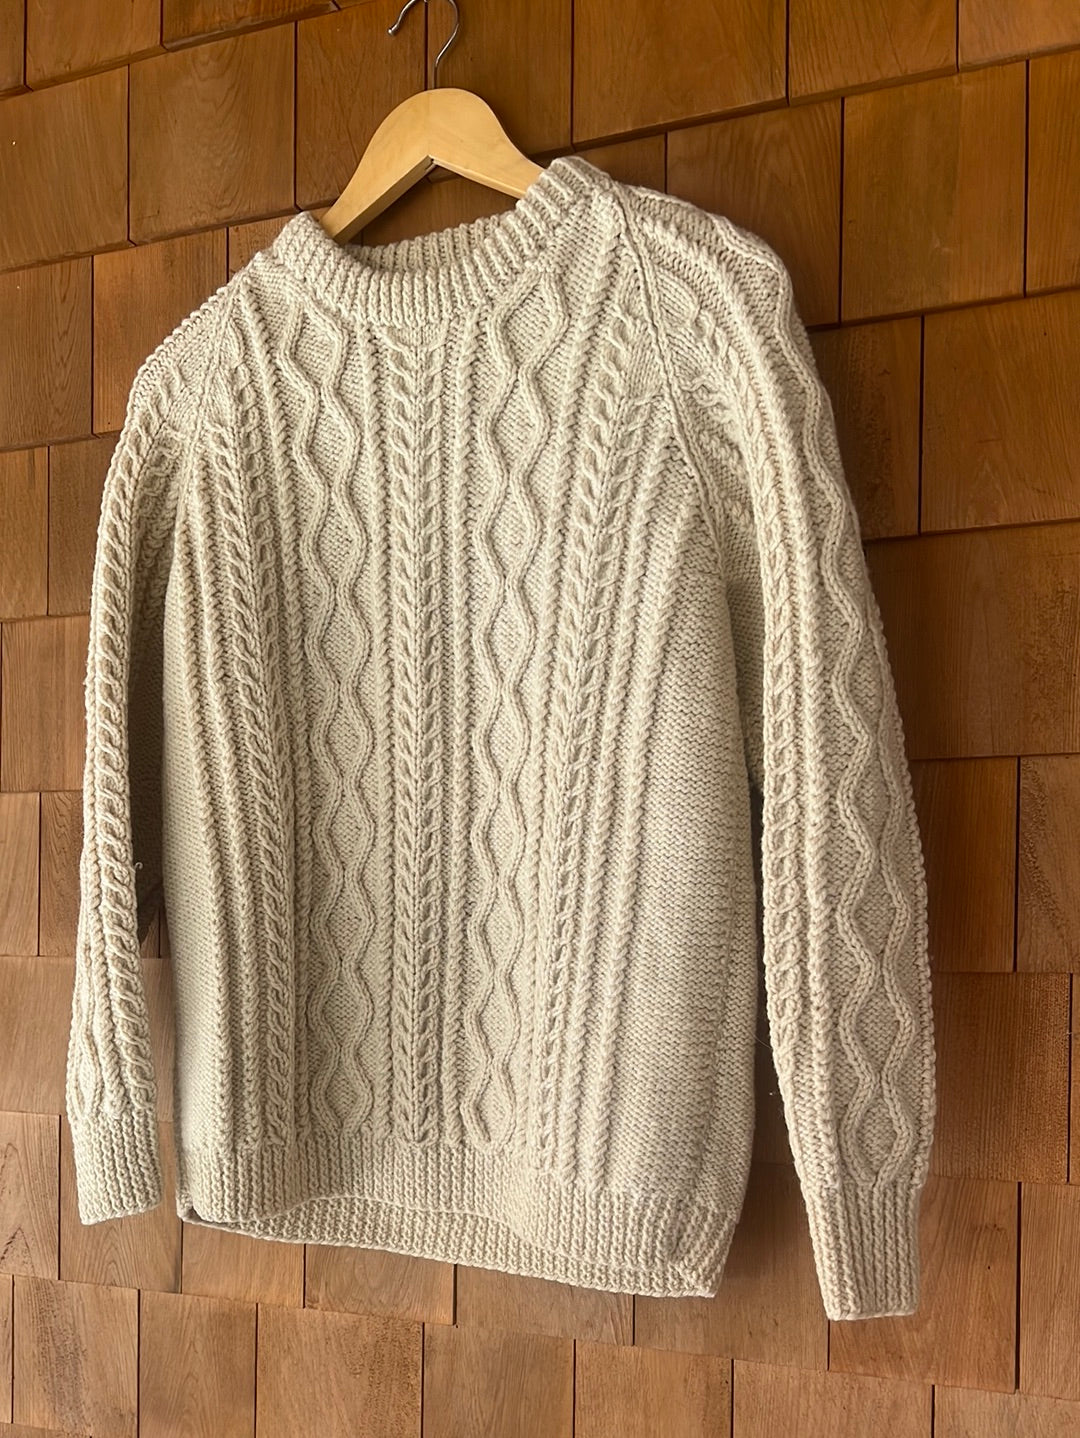 Vintage Fisherman's Wool Sweater